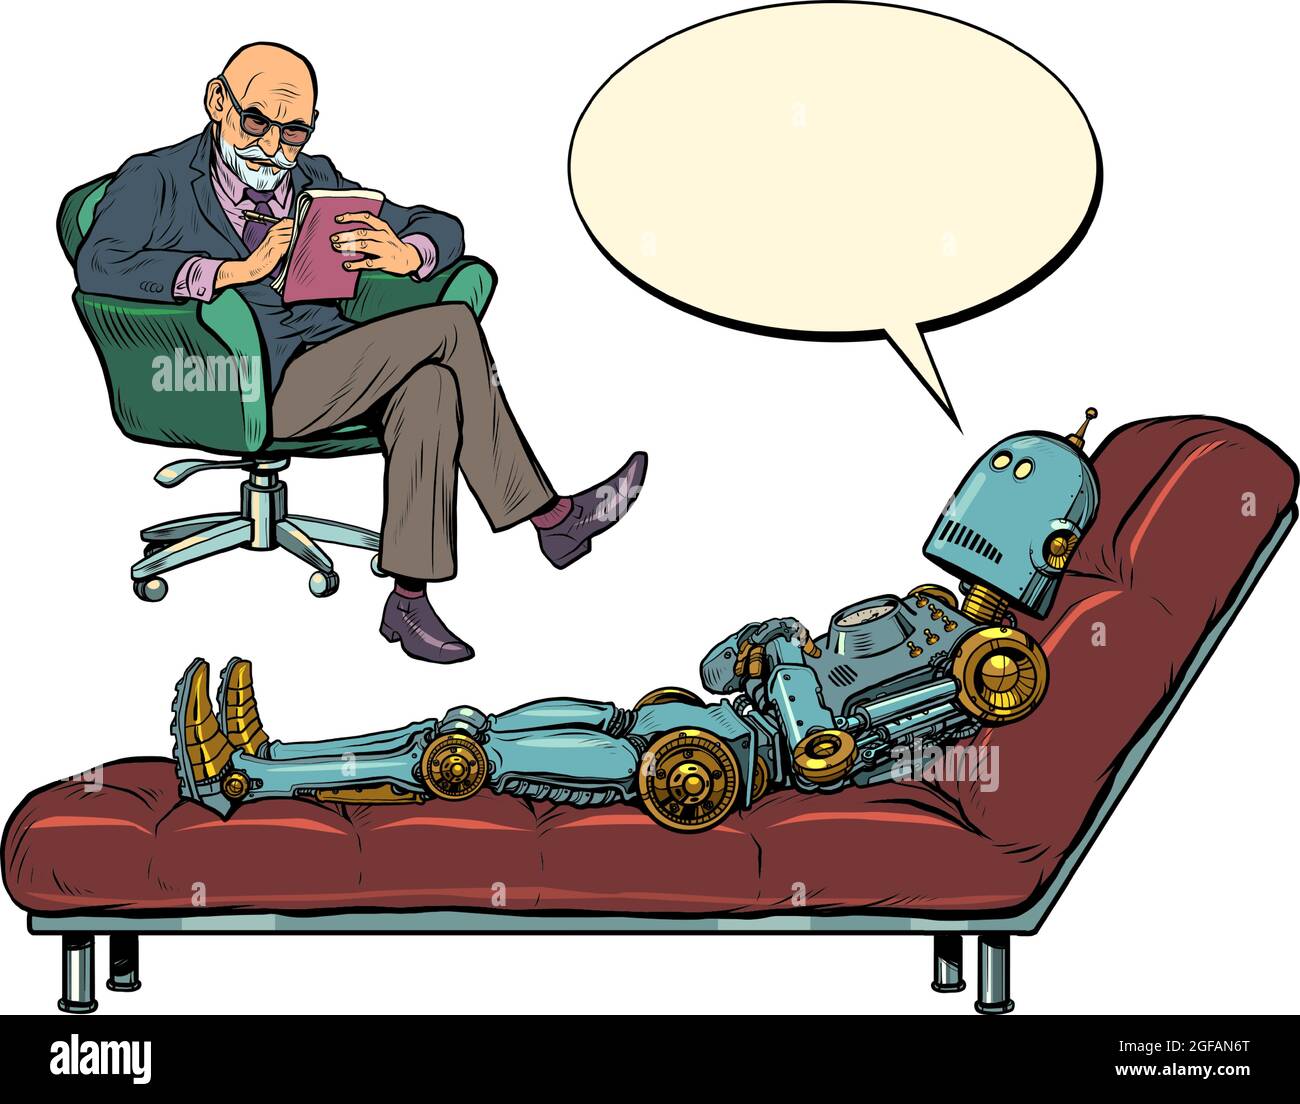 Ein männlicher Psychotherapeut bei einer Psychotherapiesitzung, hört einem Roboterpatienten zu, sitzt auf einem Stuhl und macht Notizen in einem Notizbuch Stock Vektor